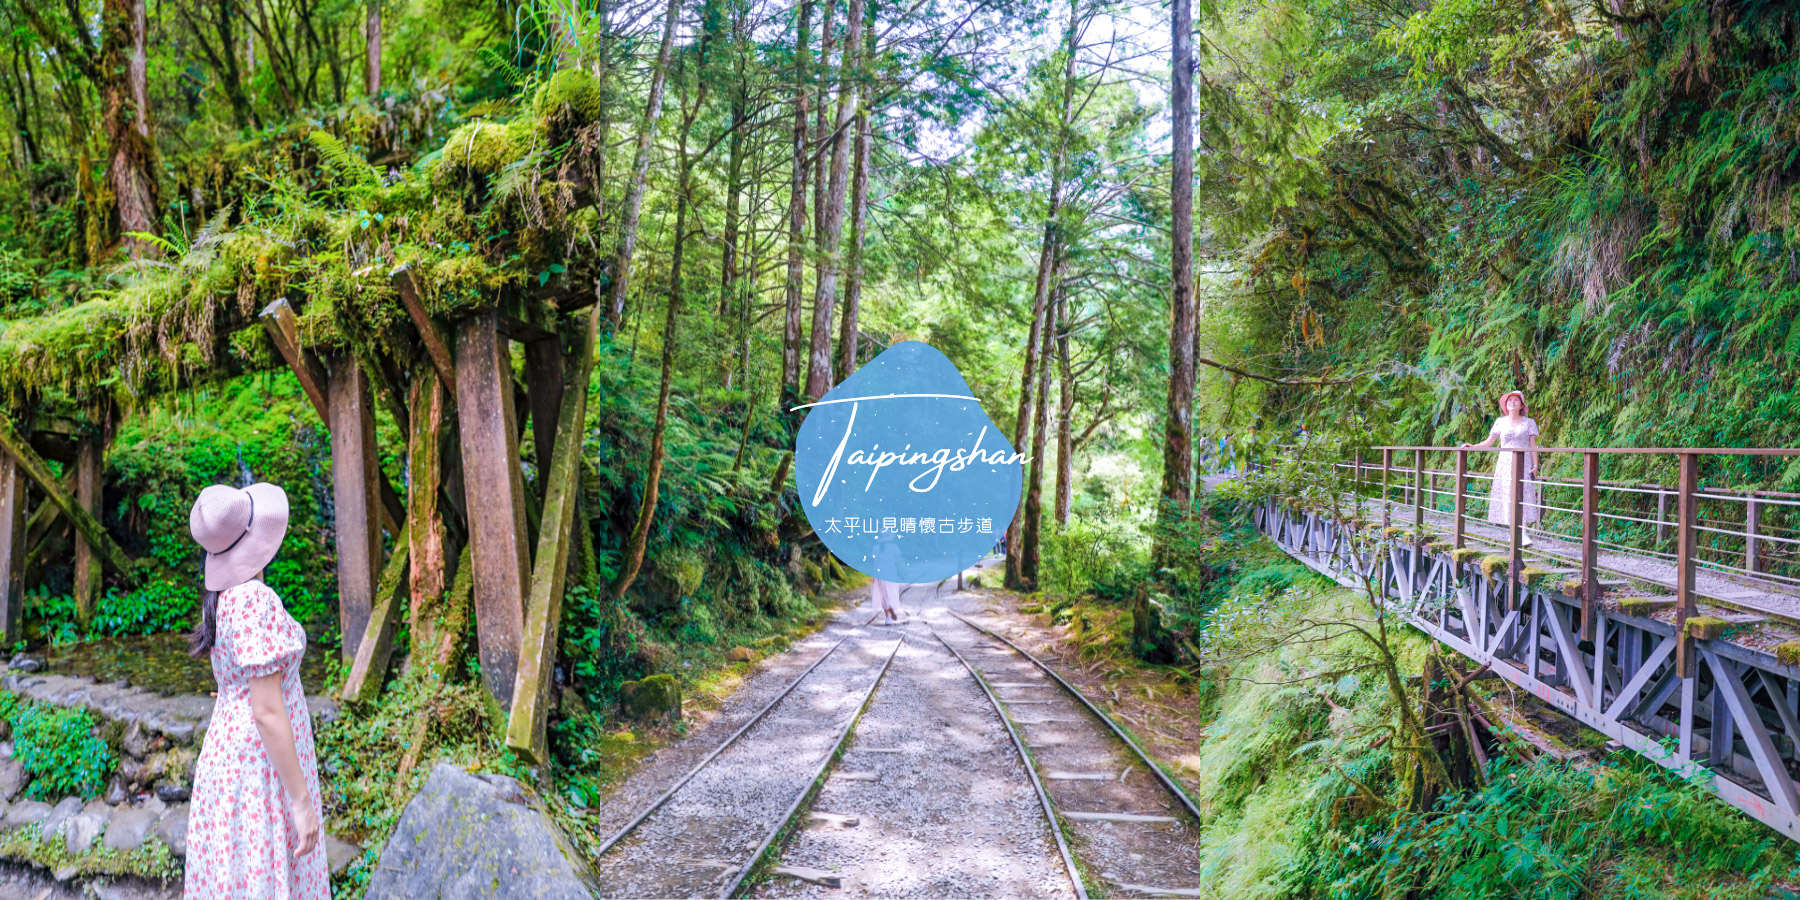 宜蘭太平山見晴懷古步道，絕美全球最美小路之一迷霧夢幻鐵道景點 @卡夫卡愛旅行